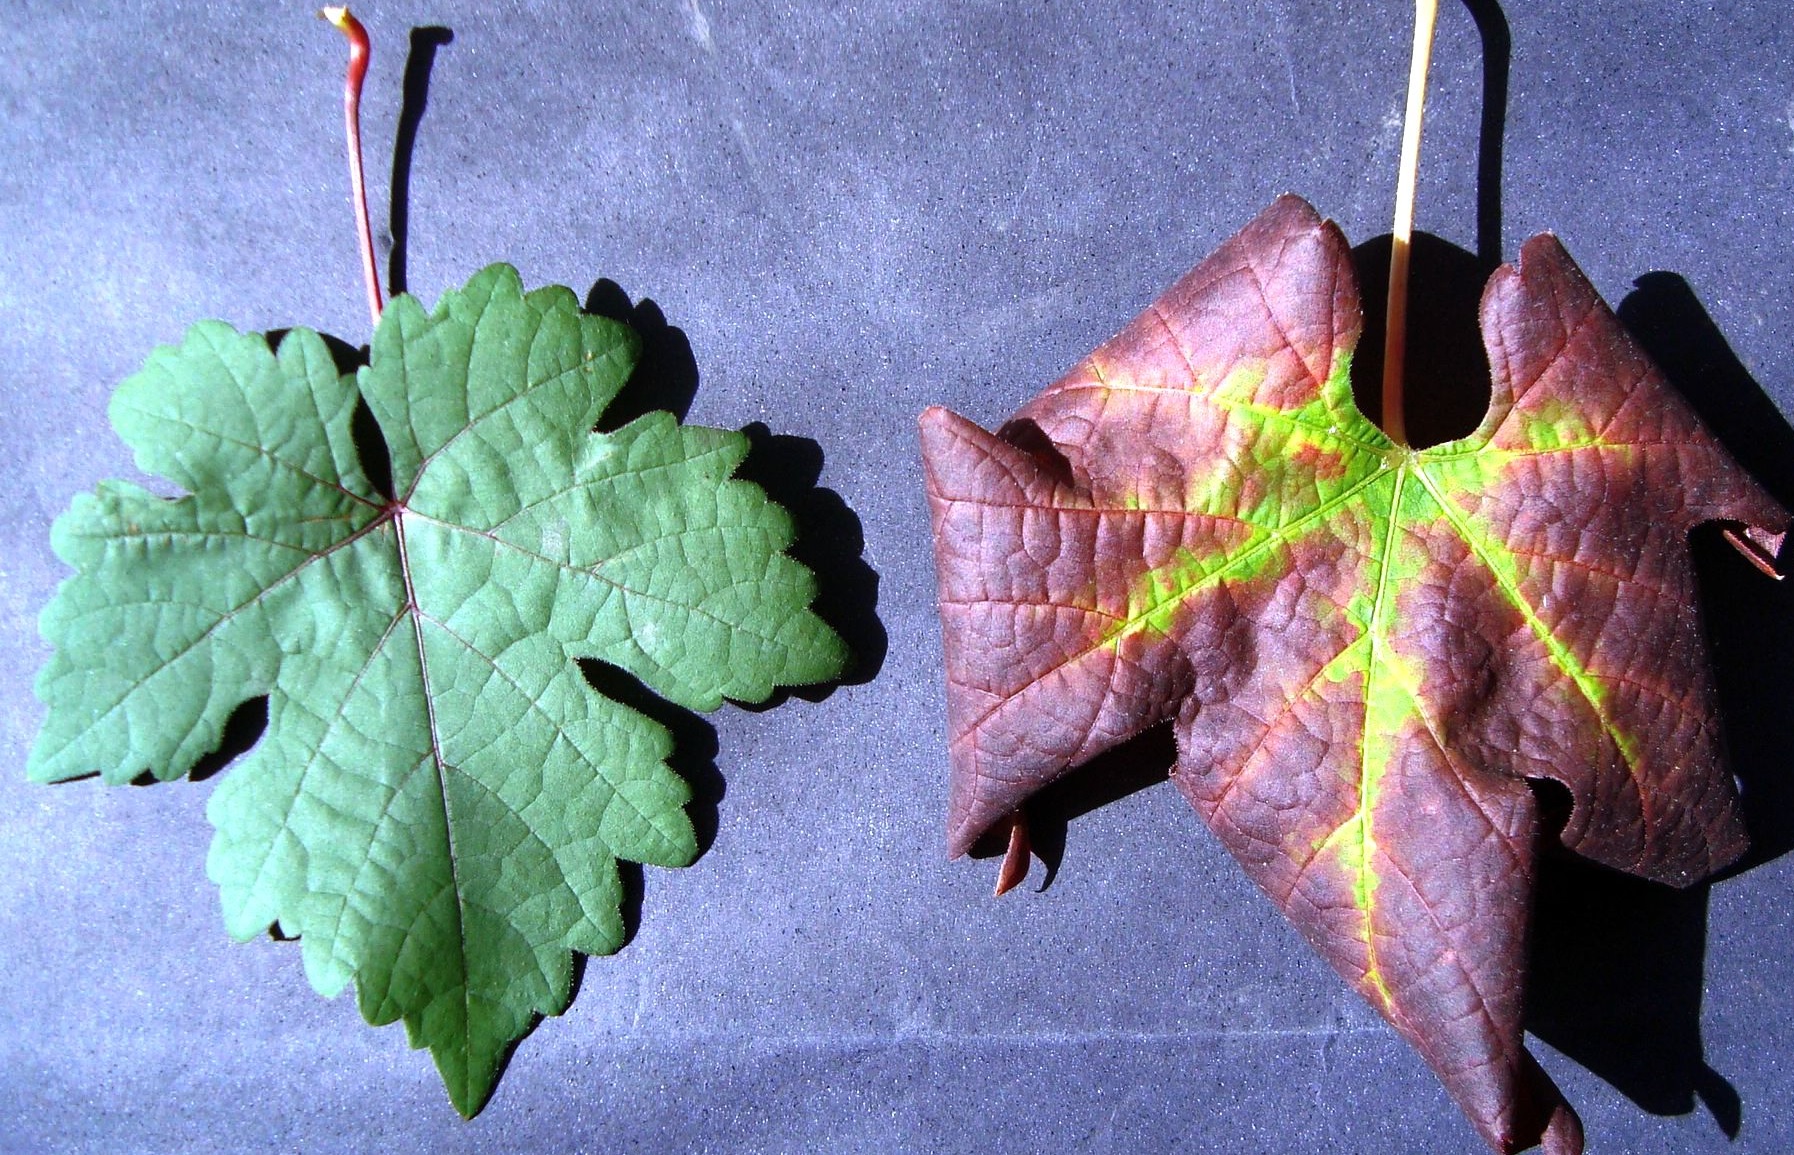 <p><b><p>Virose do complexo do lenho rugoso da videira, especificamente infecção pelo GVB, na cv. Cabernet Sauvignon. Intenso avermelhamento foliar e enrolamento dos bordos foliares (direita) e folha de planta sadia (esquerda).</p></b></p><p>Autor: Thor Fajardo</p>